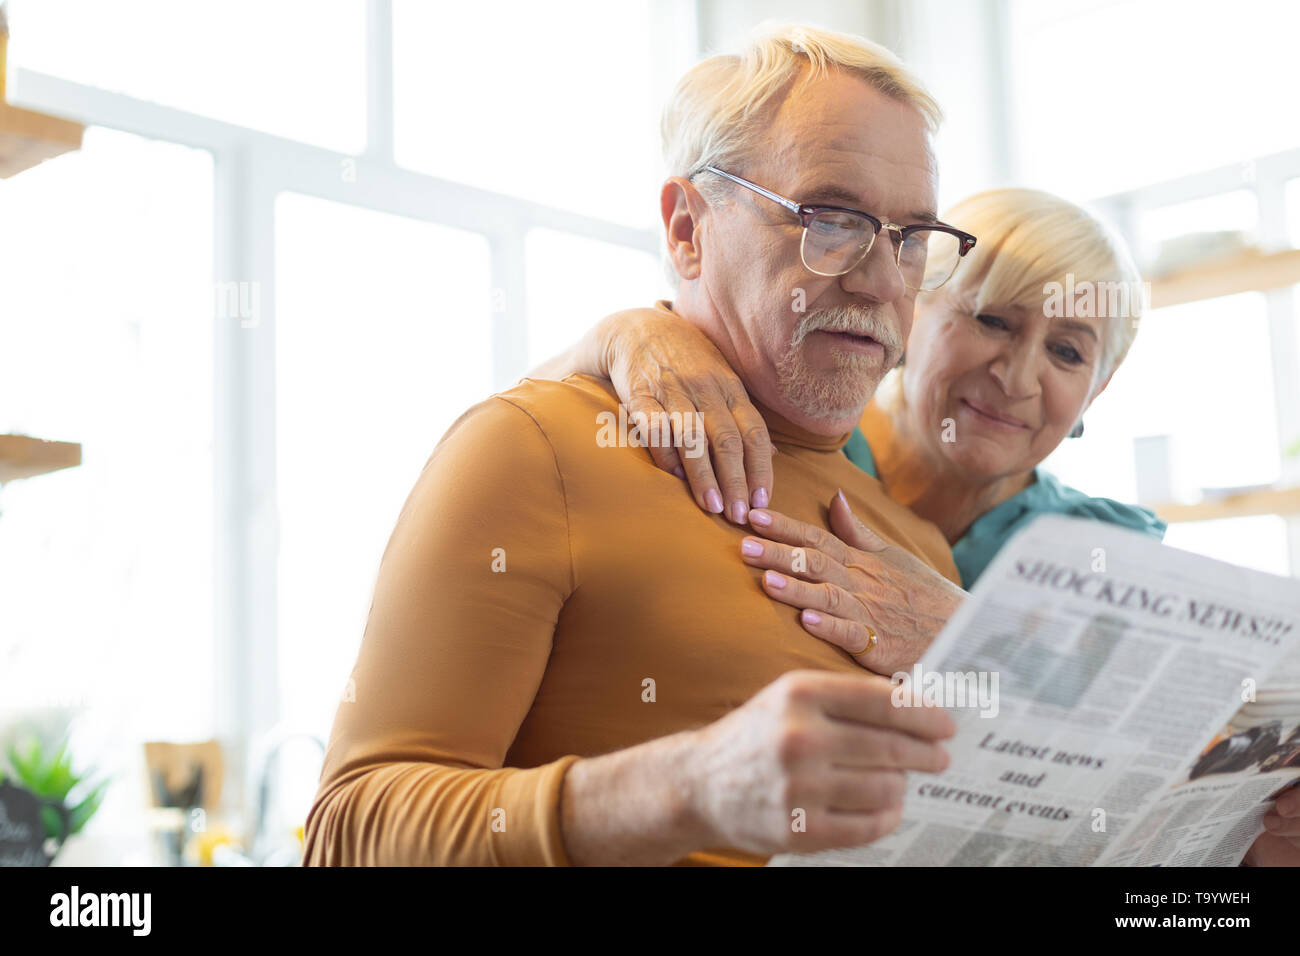 Gesicht Porträt des Ehepartners lesen Papier, während Frau ihn knuddeln Stockfoto